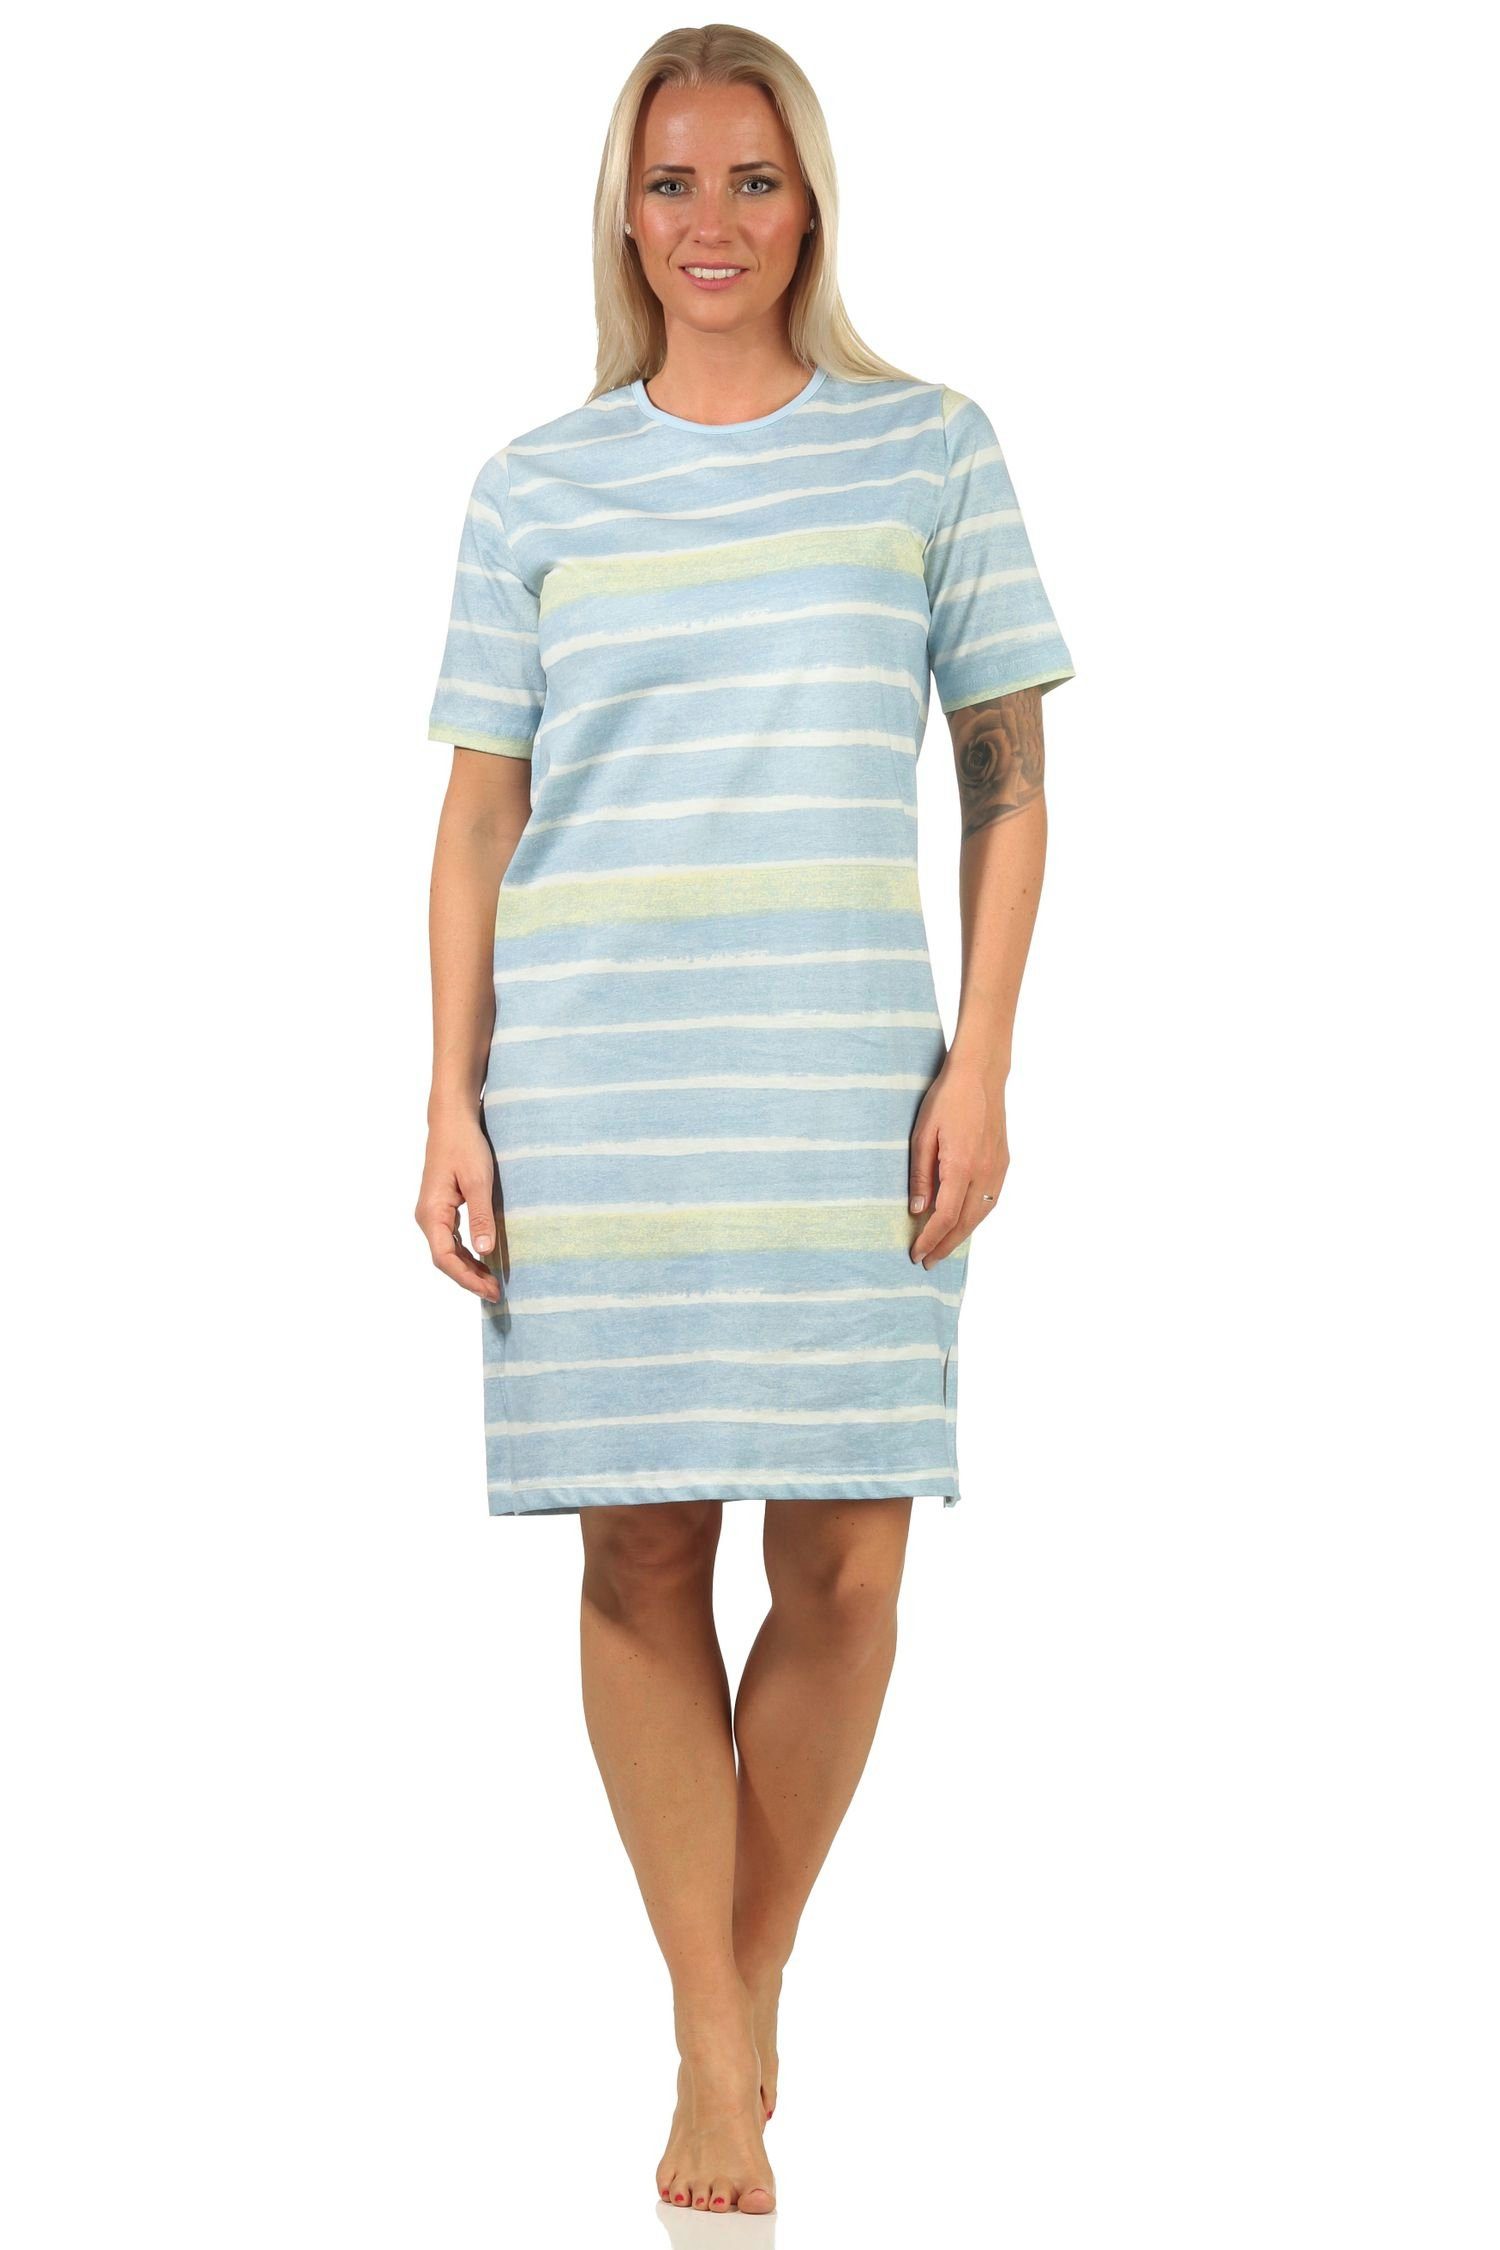 Normann Nachthemd Damen kurzarm Nachthemd im farbenfrohen Streifen Look – 112 464 hellblau